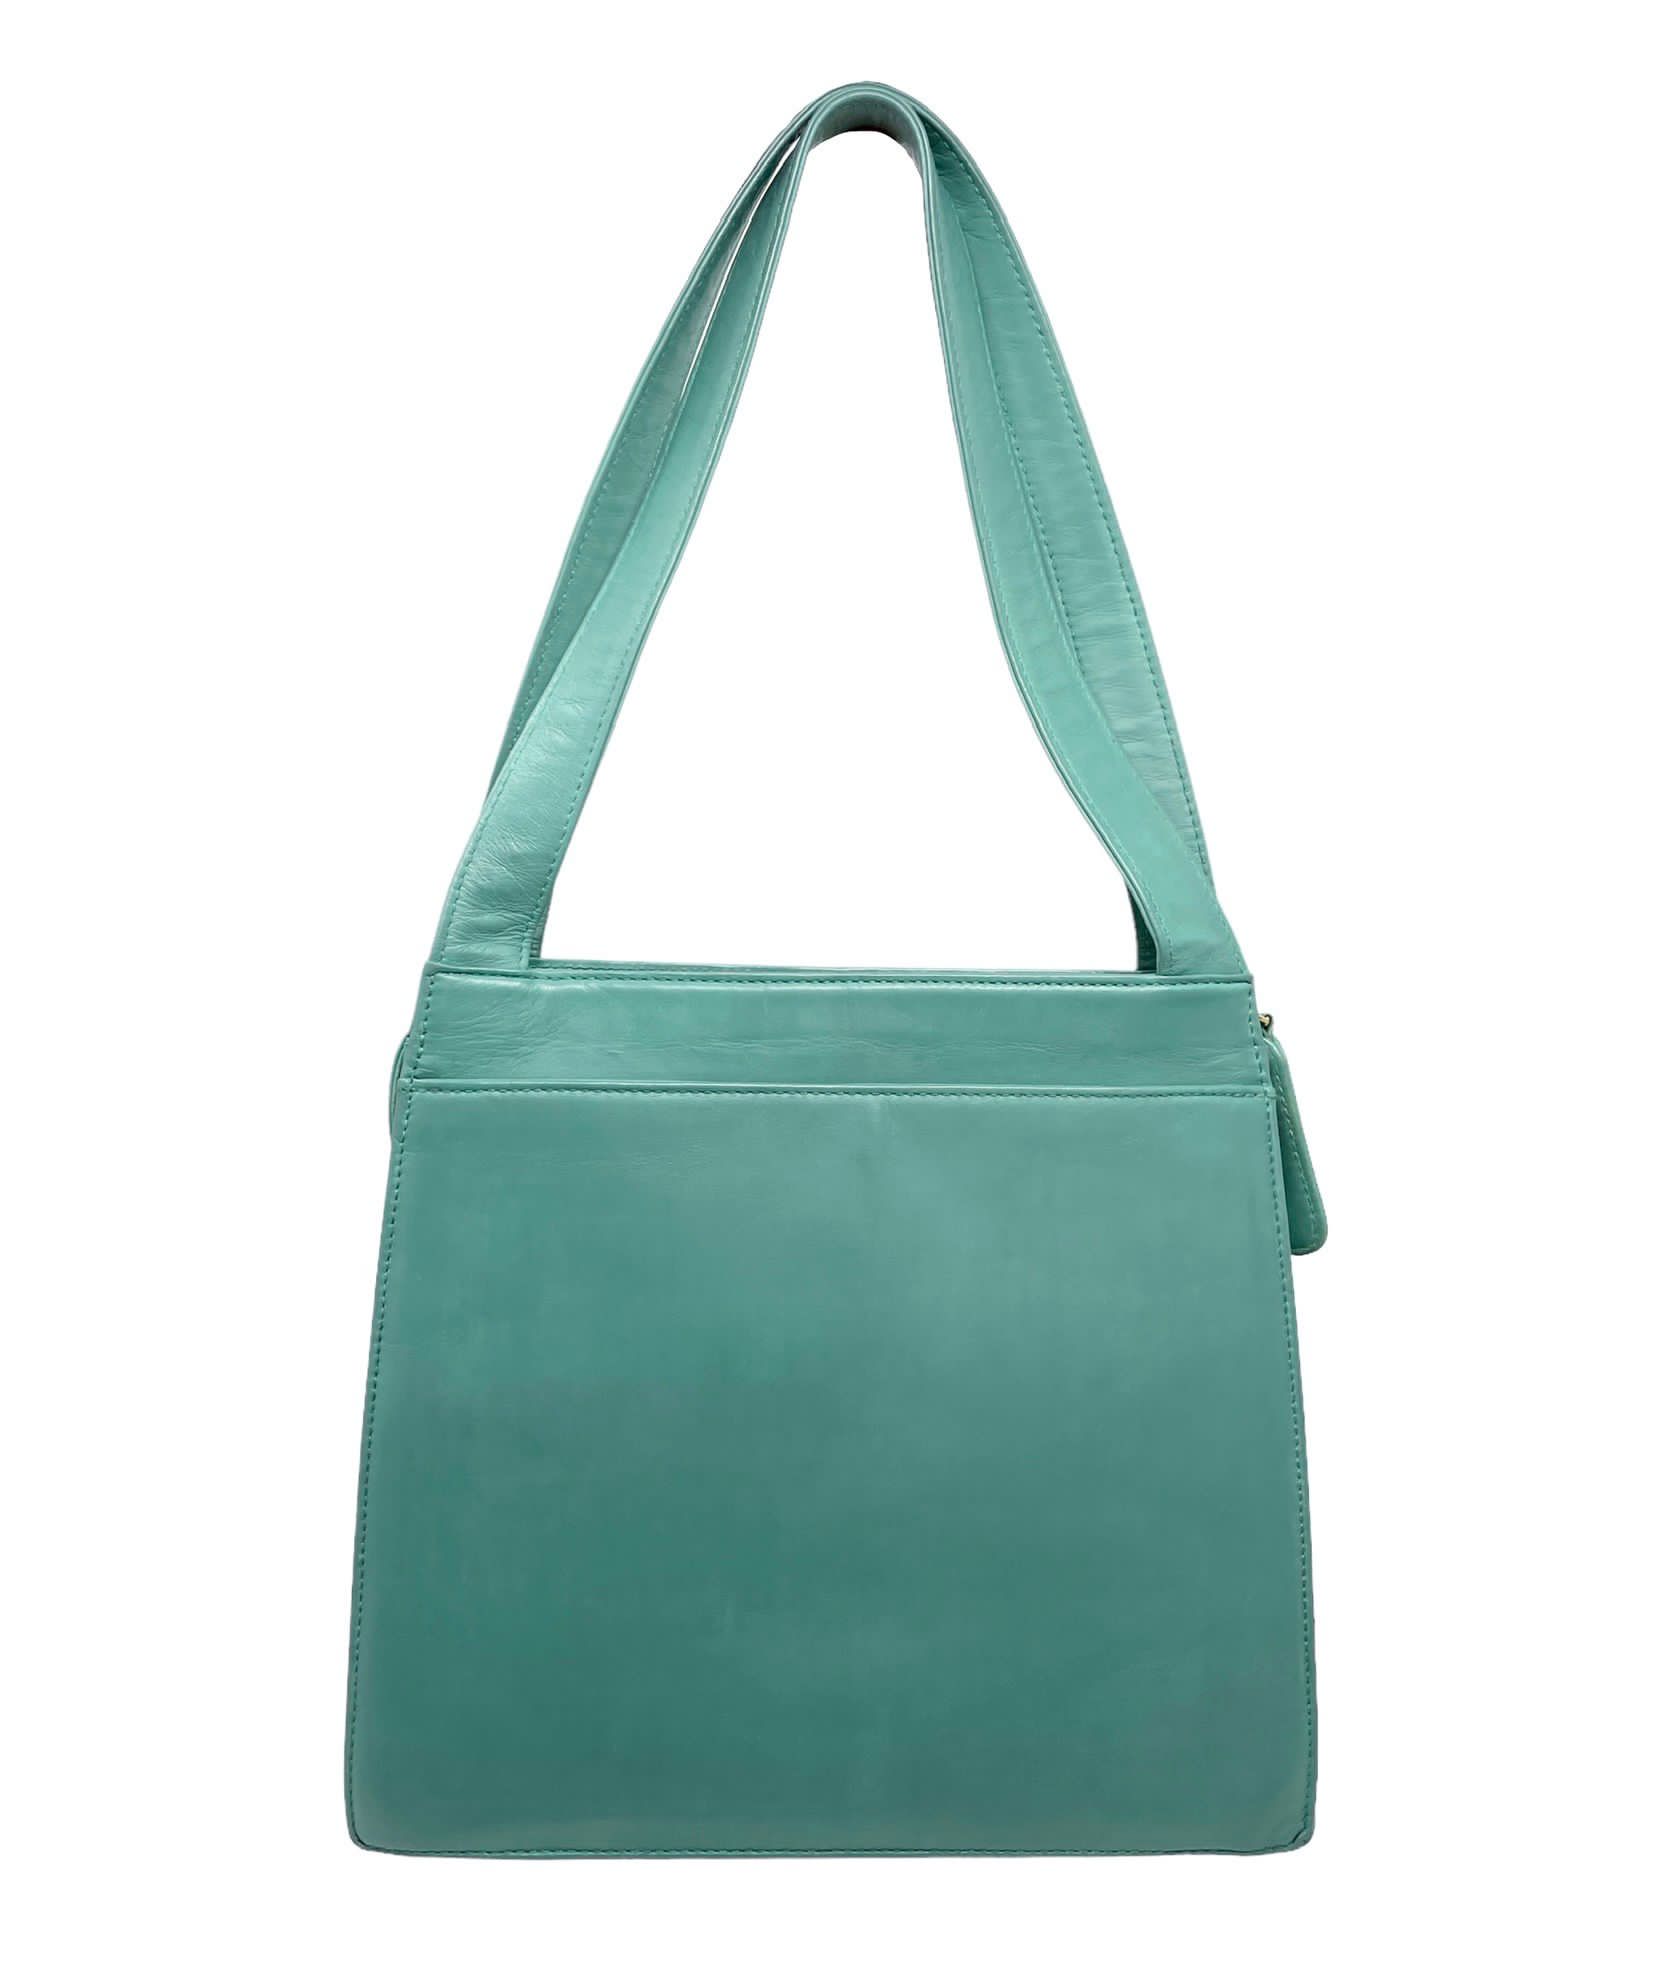 Chanel Turquoise Logo Top Handle Bag